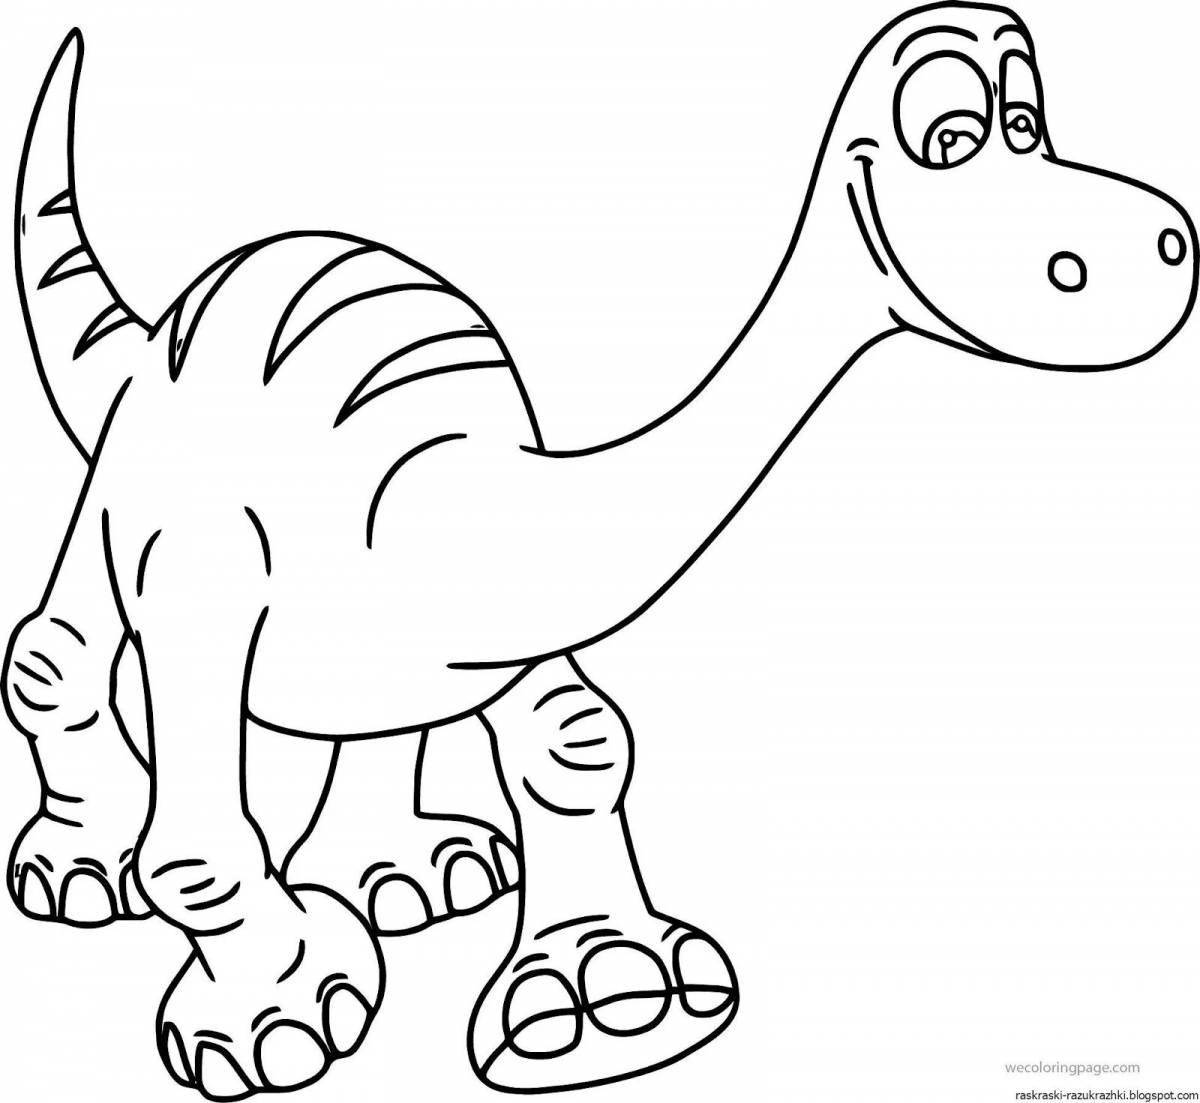 Яркие динозавры раскраски для детей 4-5 лет